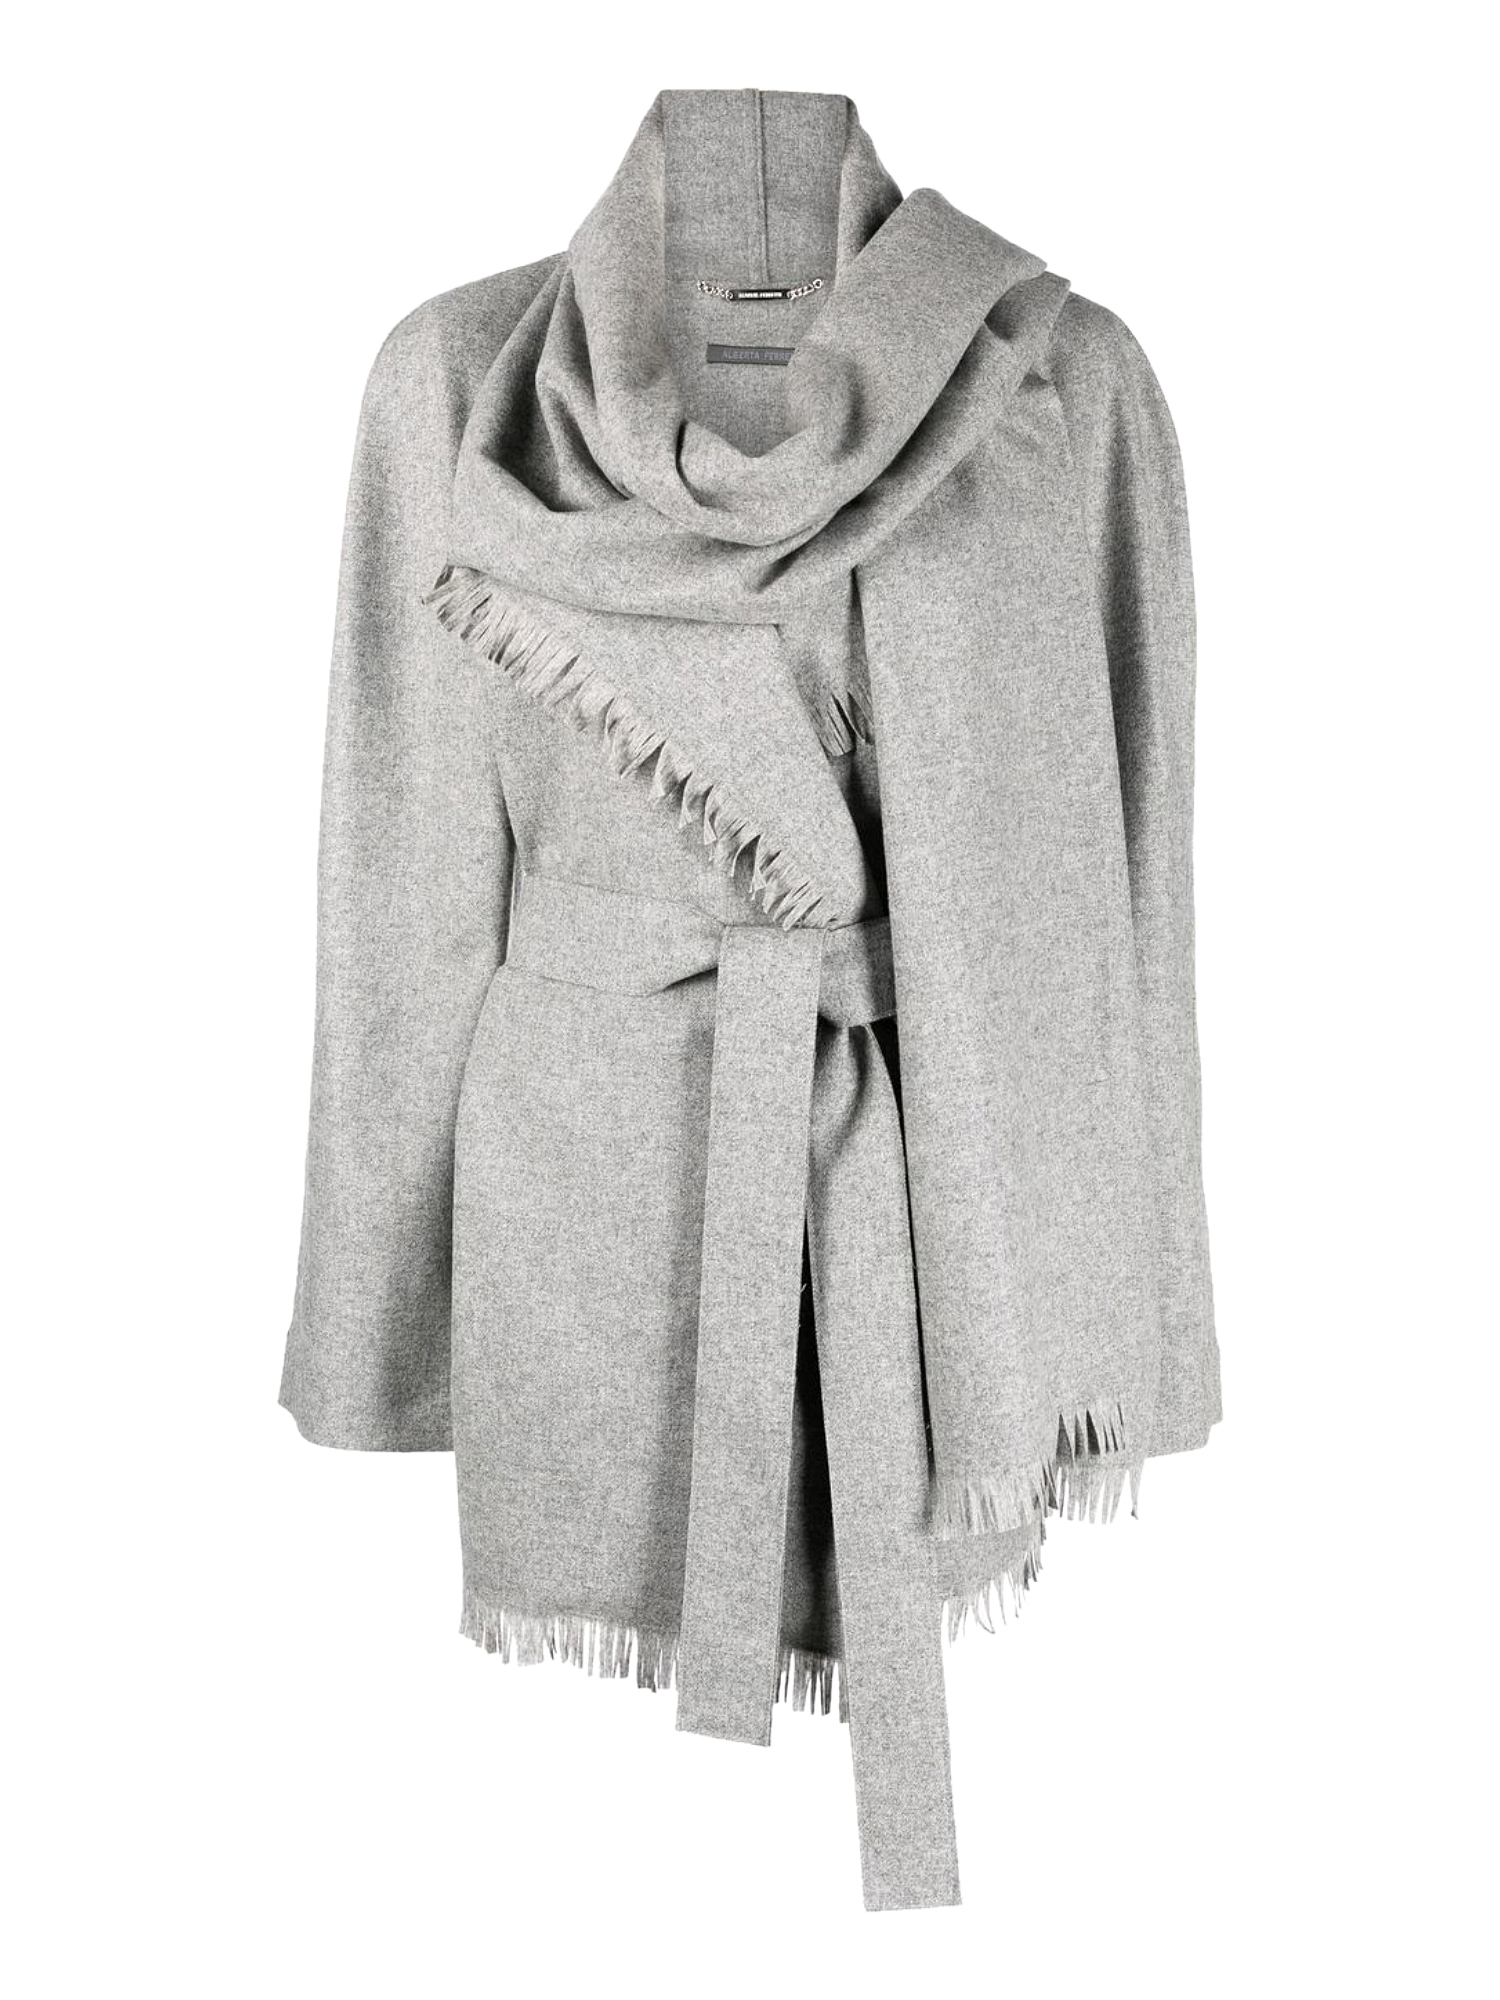 Vestes Pour Femme - Alberta Ferretti - En Wool Grey - Taille:  -